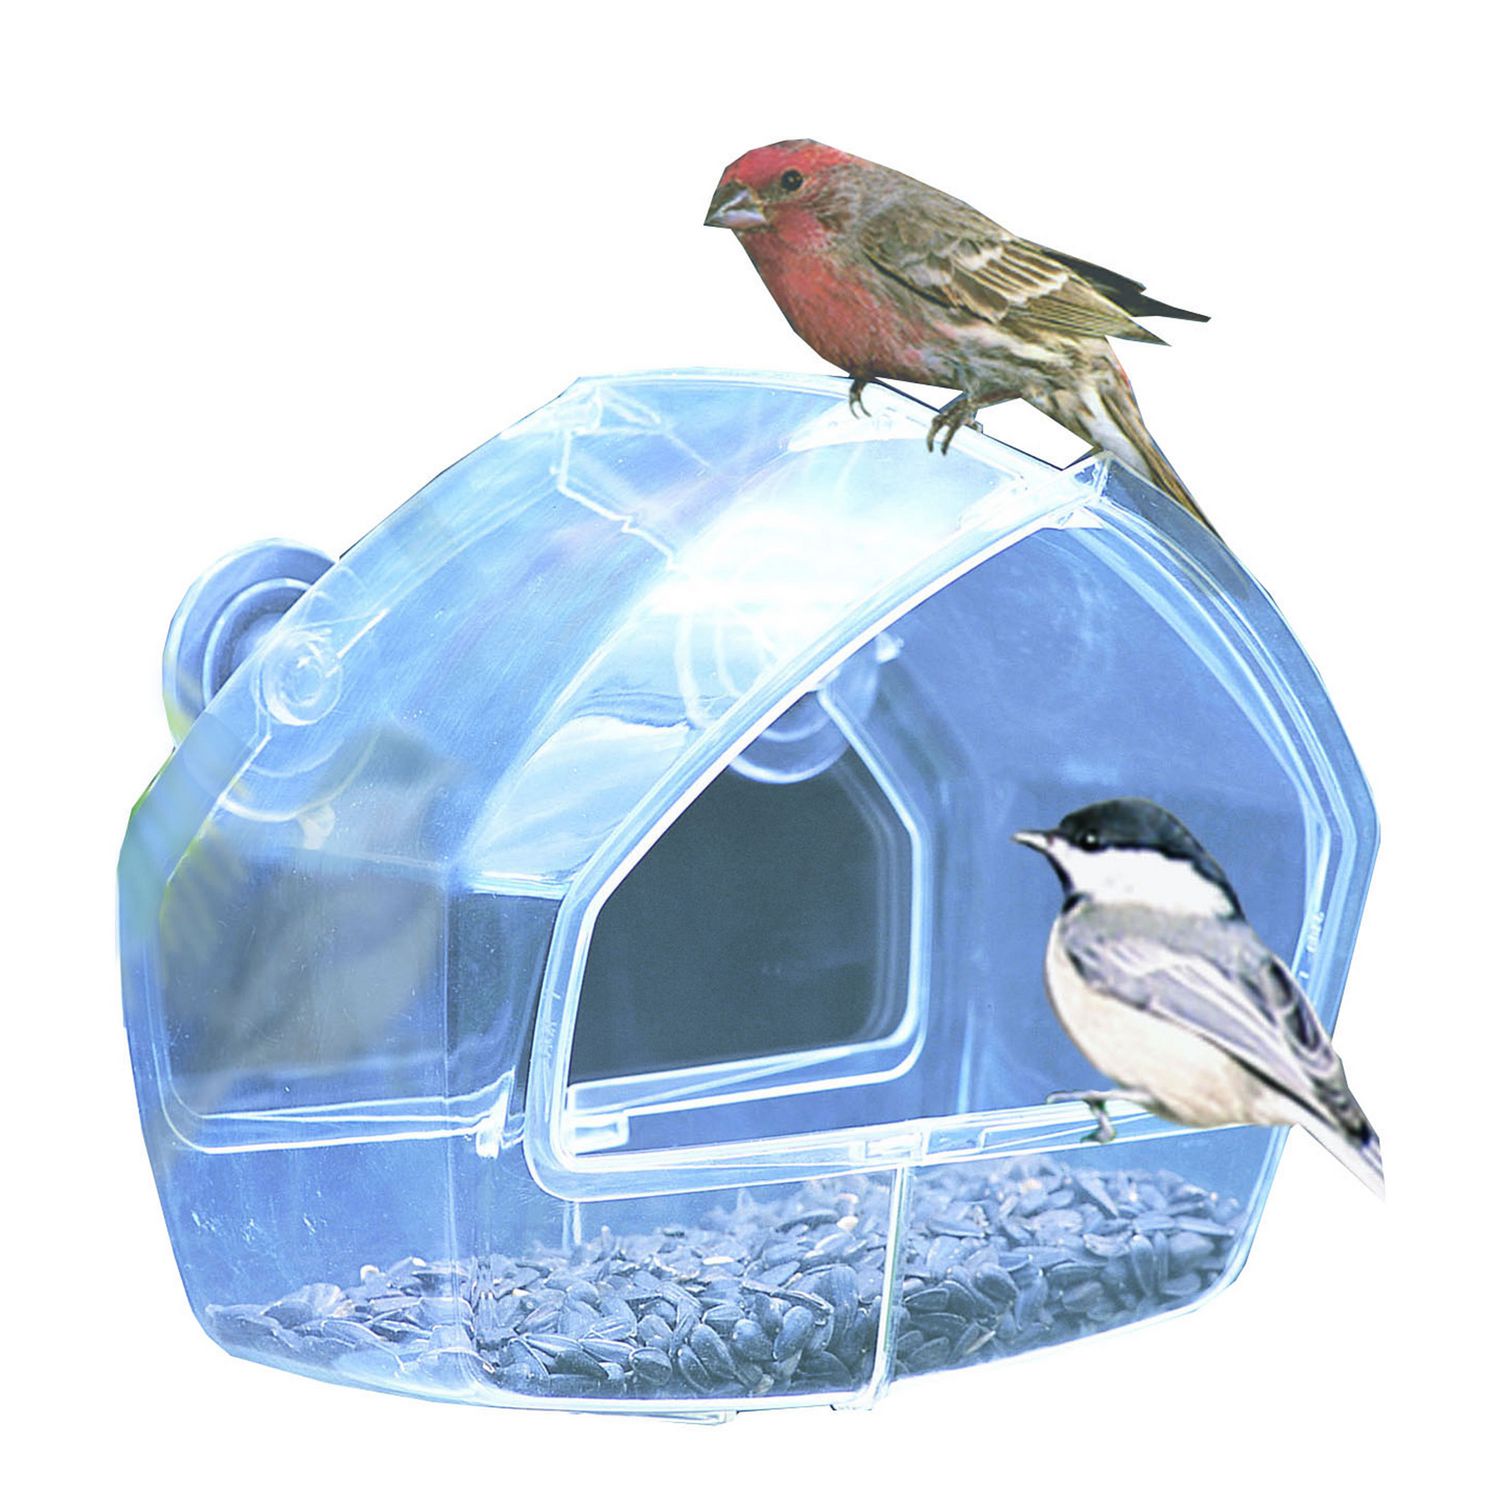 Zolux - Mangeoire Ovale Transparente pour Oiseaux